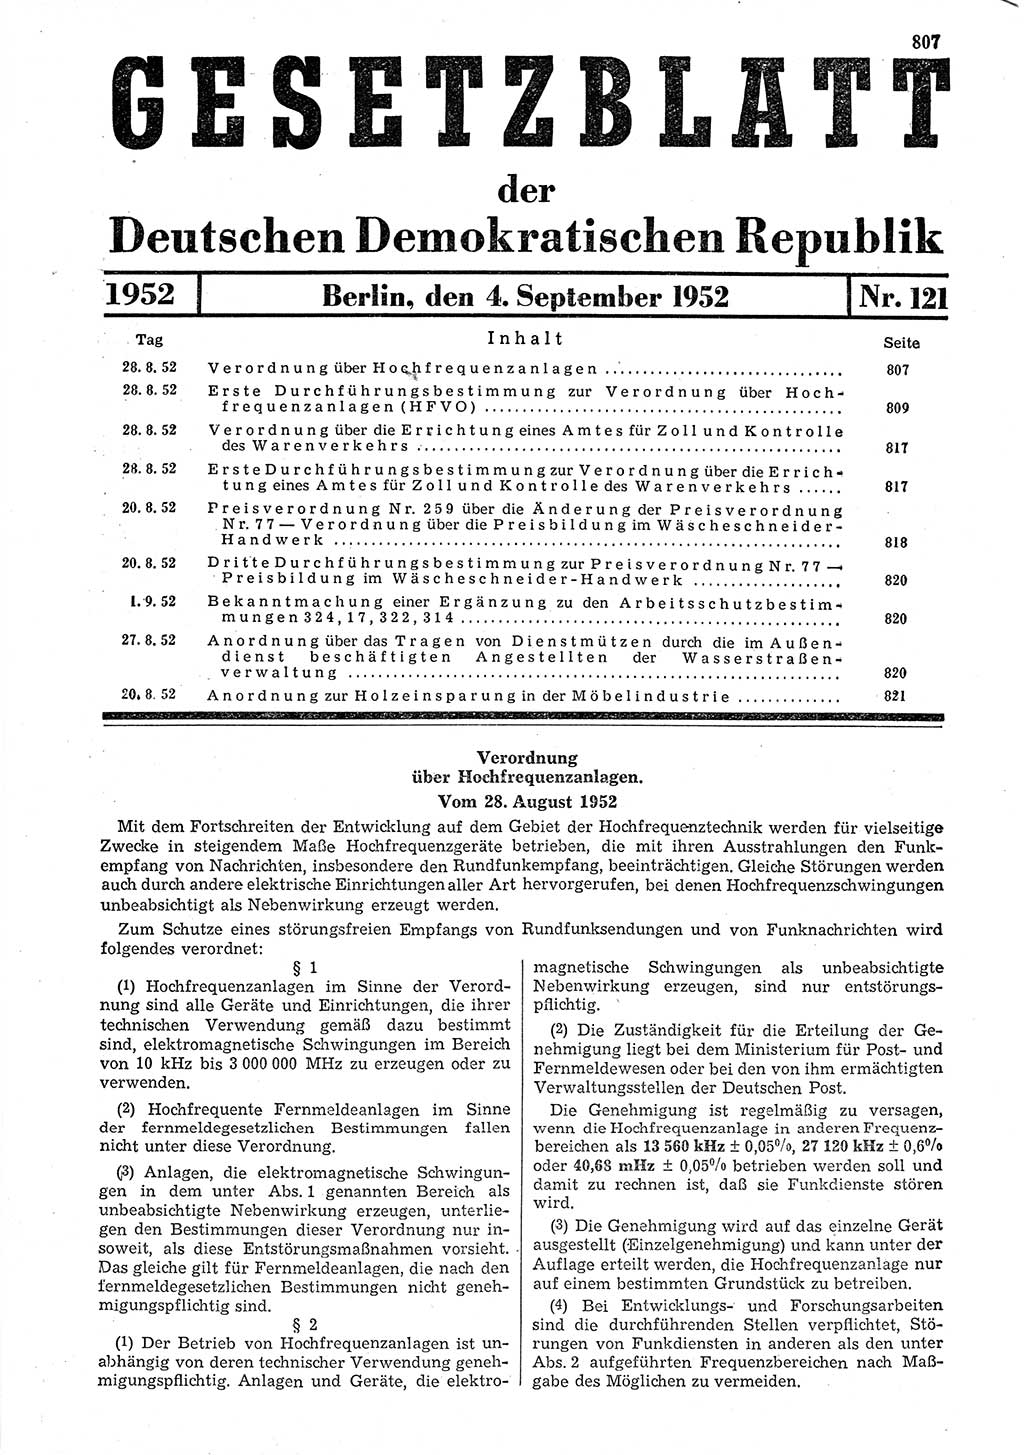 Gesetzblatt (GBl.) der Deutschen Demokratischen Republik (DDR) 1952, Seite 807 (GBl. DDR 1952, S. 807)